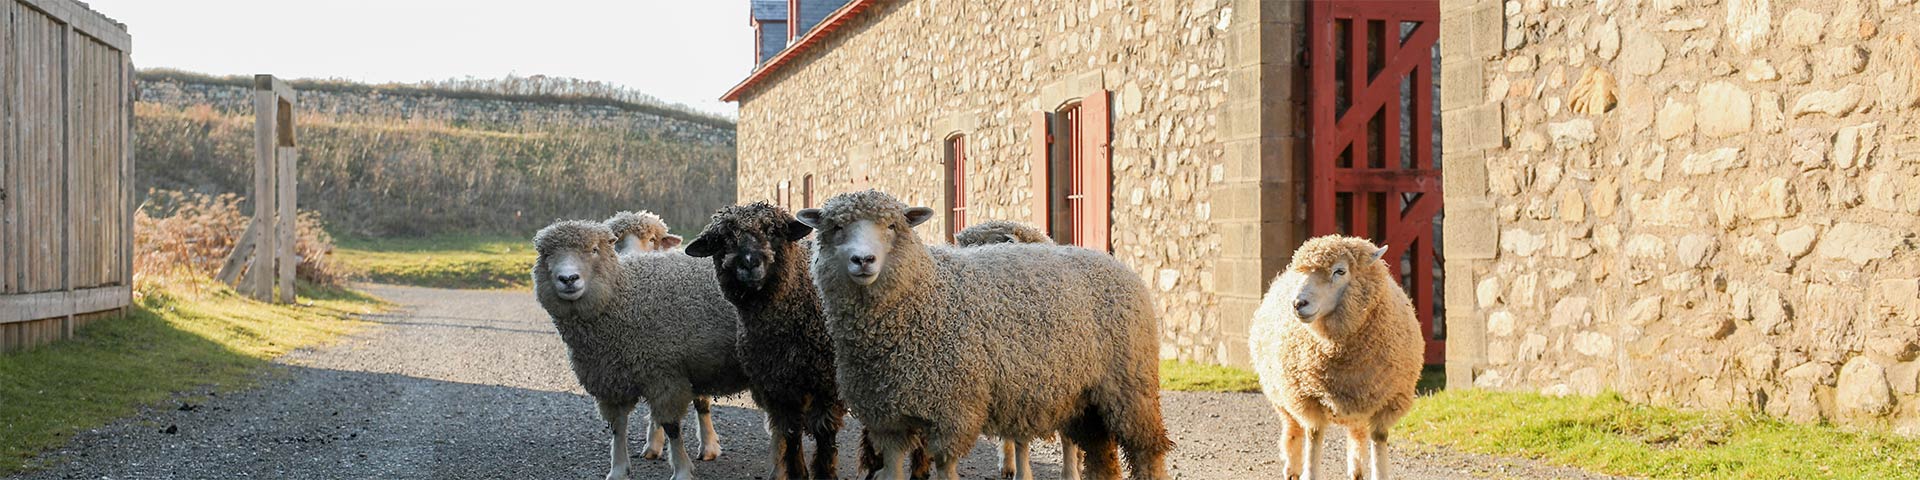 Un groupe de moutons se tient sur une route de gravier au milieu de bâtiments historiques.